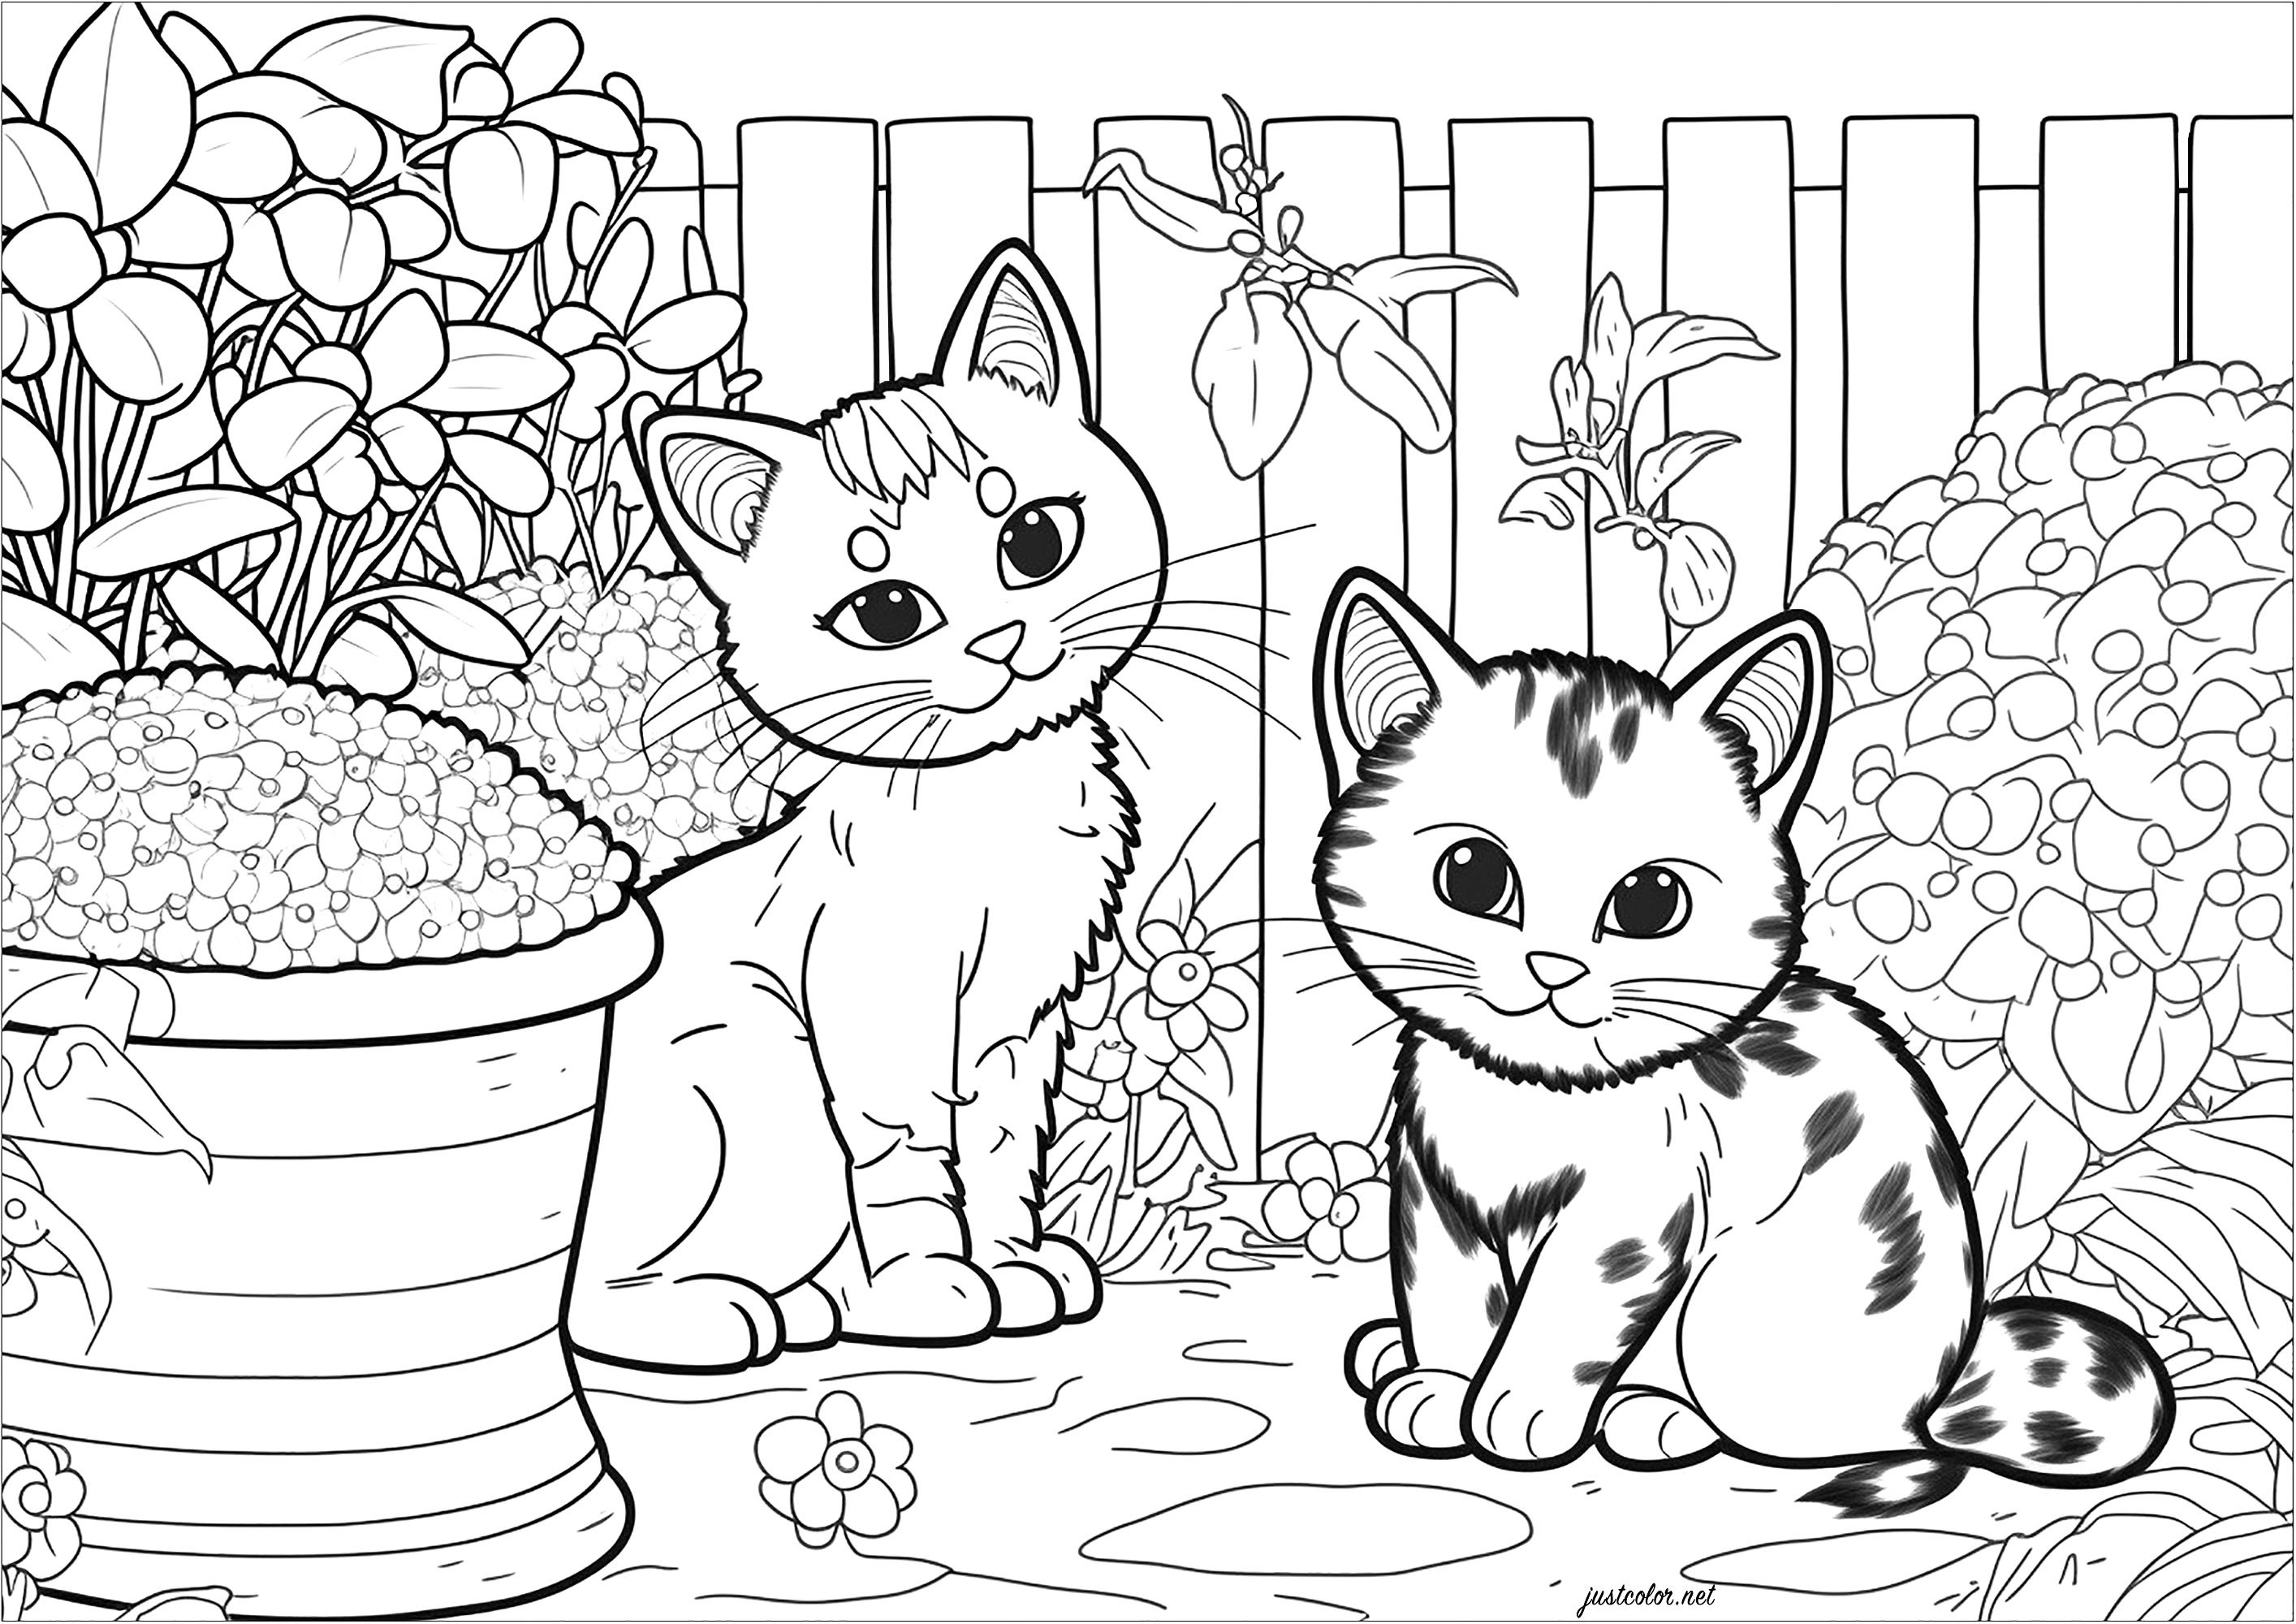 Dois gatinhos no jardim para colorir. Esta página de coloração é ao mesmo tempo gira e relaxante. Descreve dois gatinhos a brincar num jardim. Os gatos estão rodeados por uma variedade de elementos vegetais, tais como flores, arbustos, árvores e gramíneas. É uma óptima maneira de escapar para um mundo de cor e natureza.